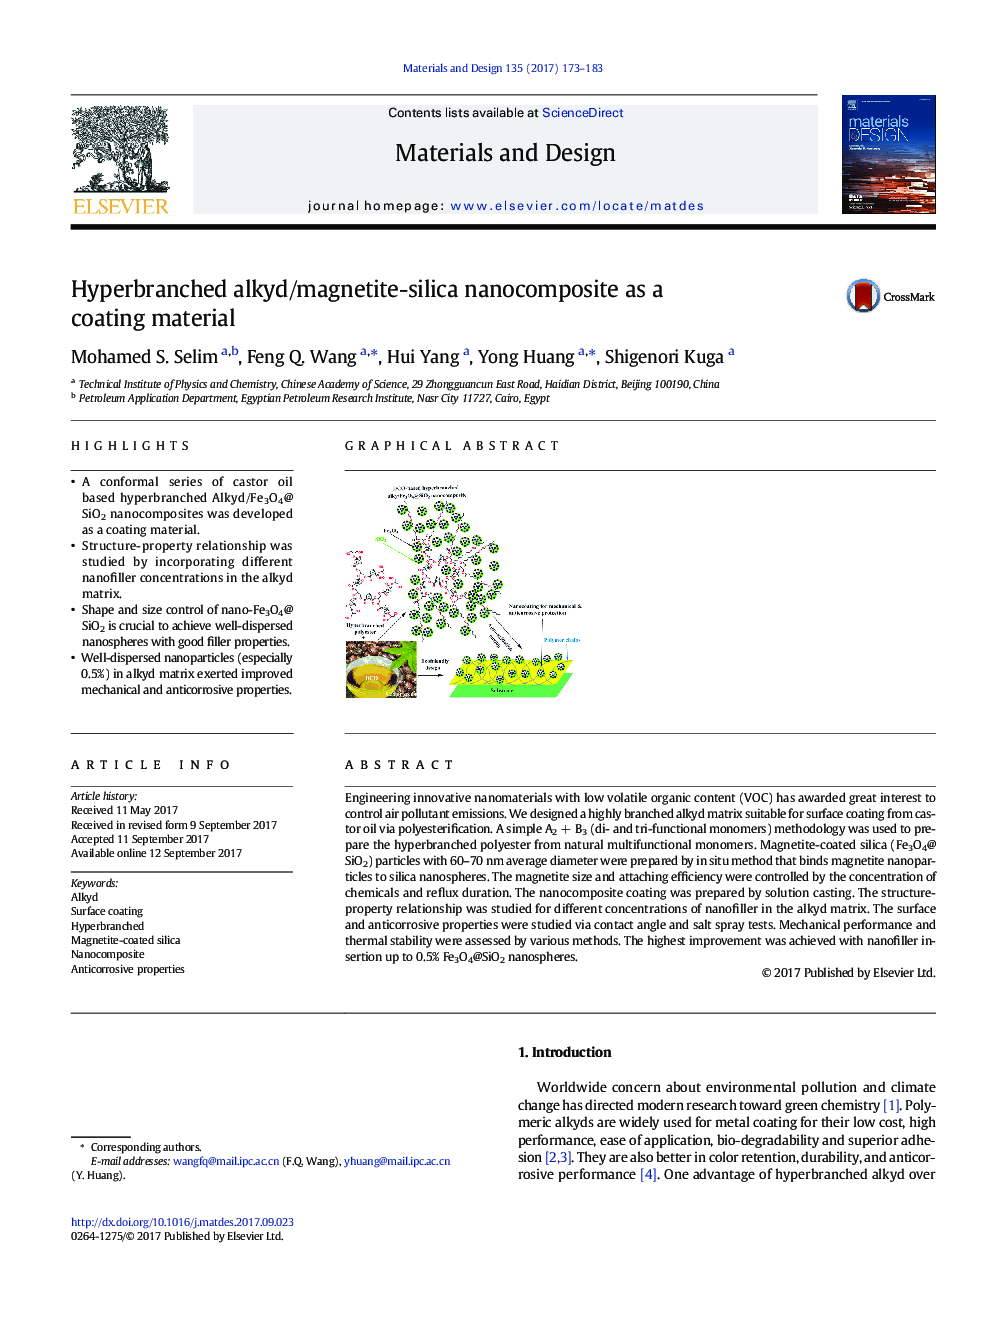 نانوکامپوزیت سیلیکا آلکیدی / مگنتیتی به عنوان یک ماده پوشش 